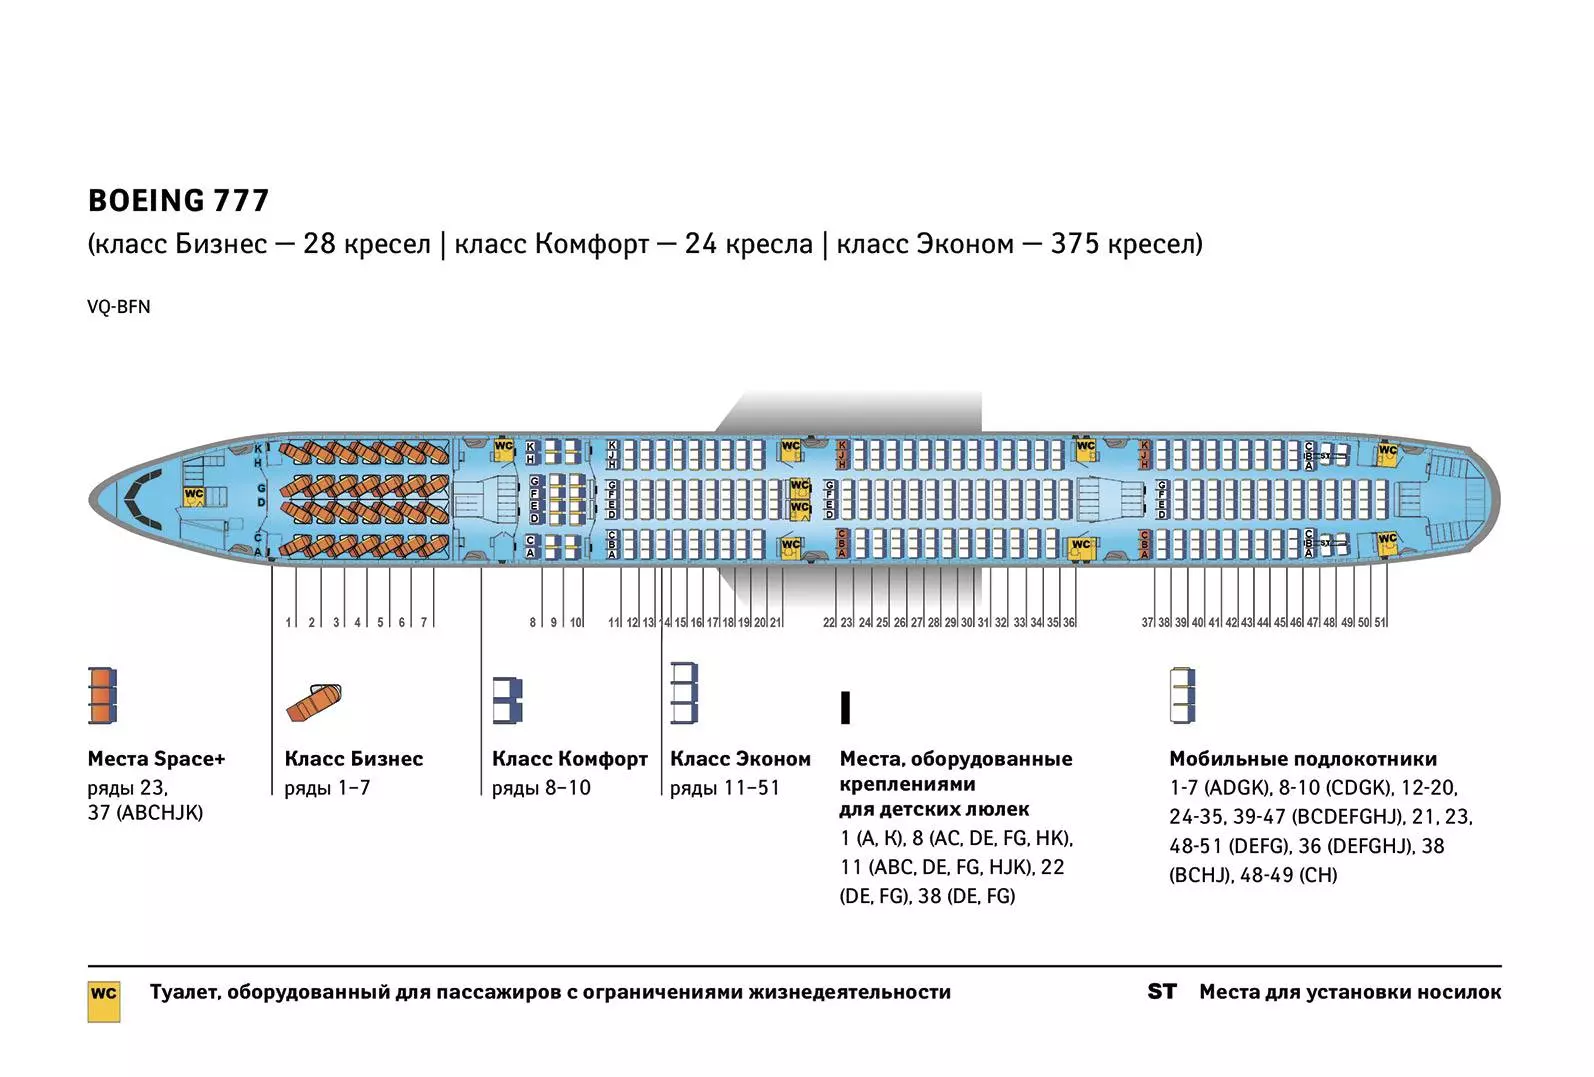 Боинг 777 300 er: схема салона и расположение лучших мест в самолете, какие авиакомпании используют, характеристики авиалайнера